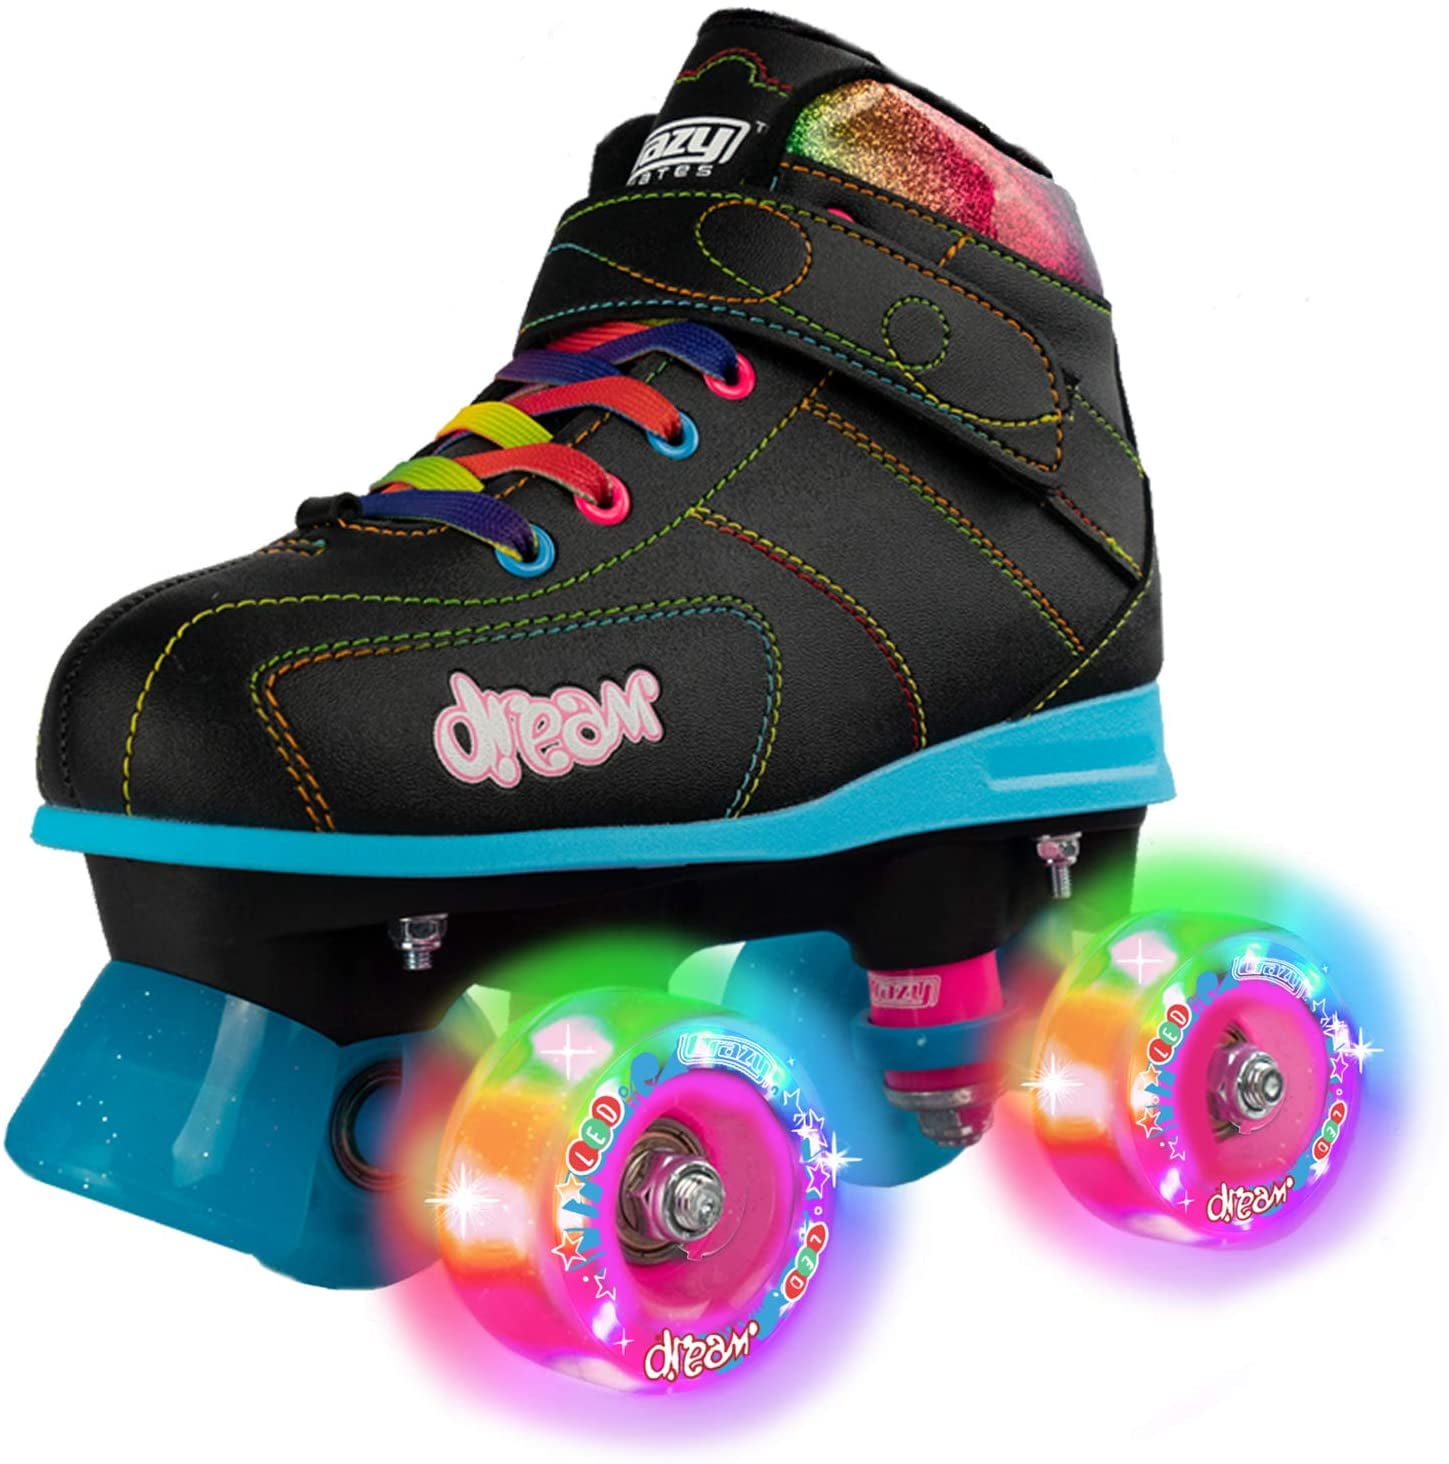 Dream Roller Skates with LED Light-Up 